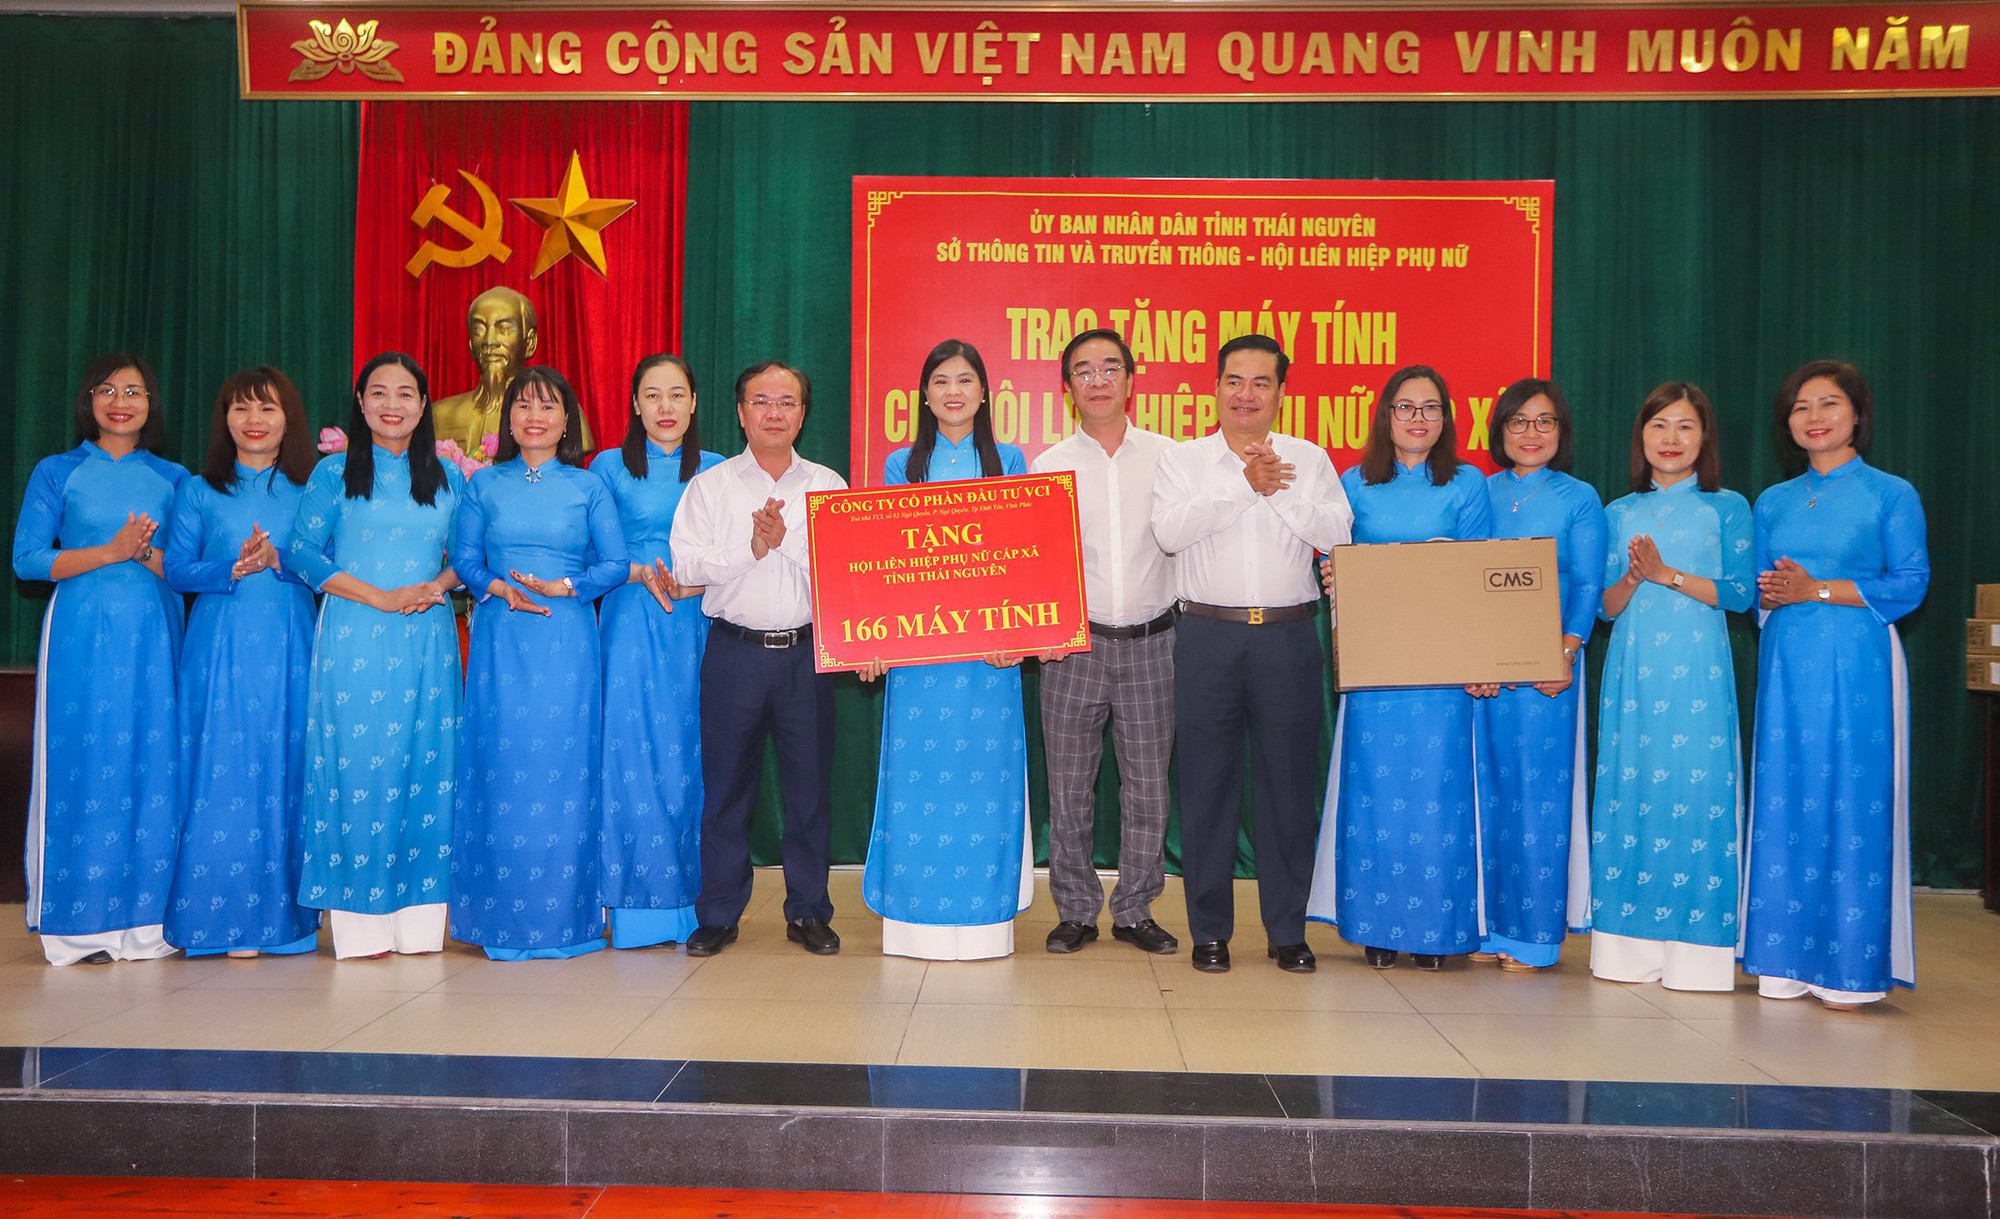 Nâng cao vai trò chuyển đổi số ở Thái Nguyên: Tặng 166 máy tính cho Hội Liên hiệp phụ nữ cấp xã - Ảnh 2.